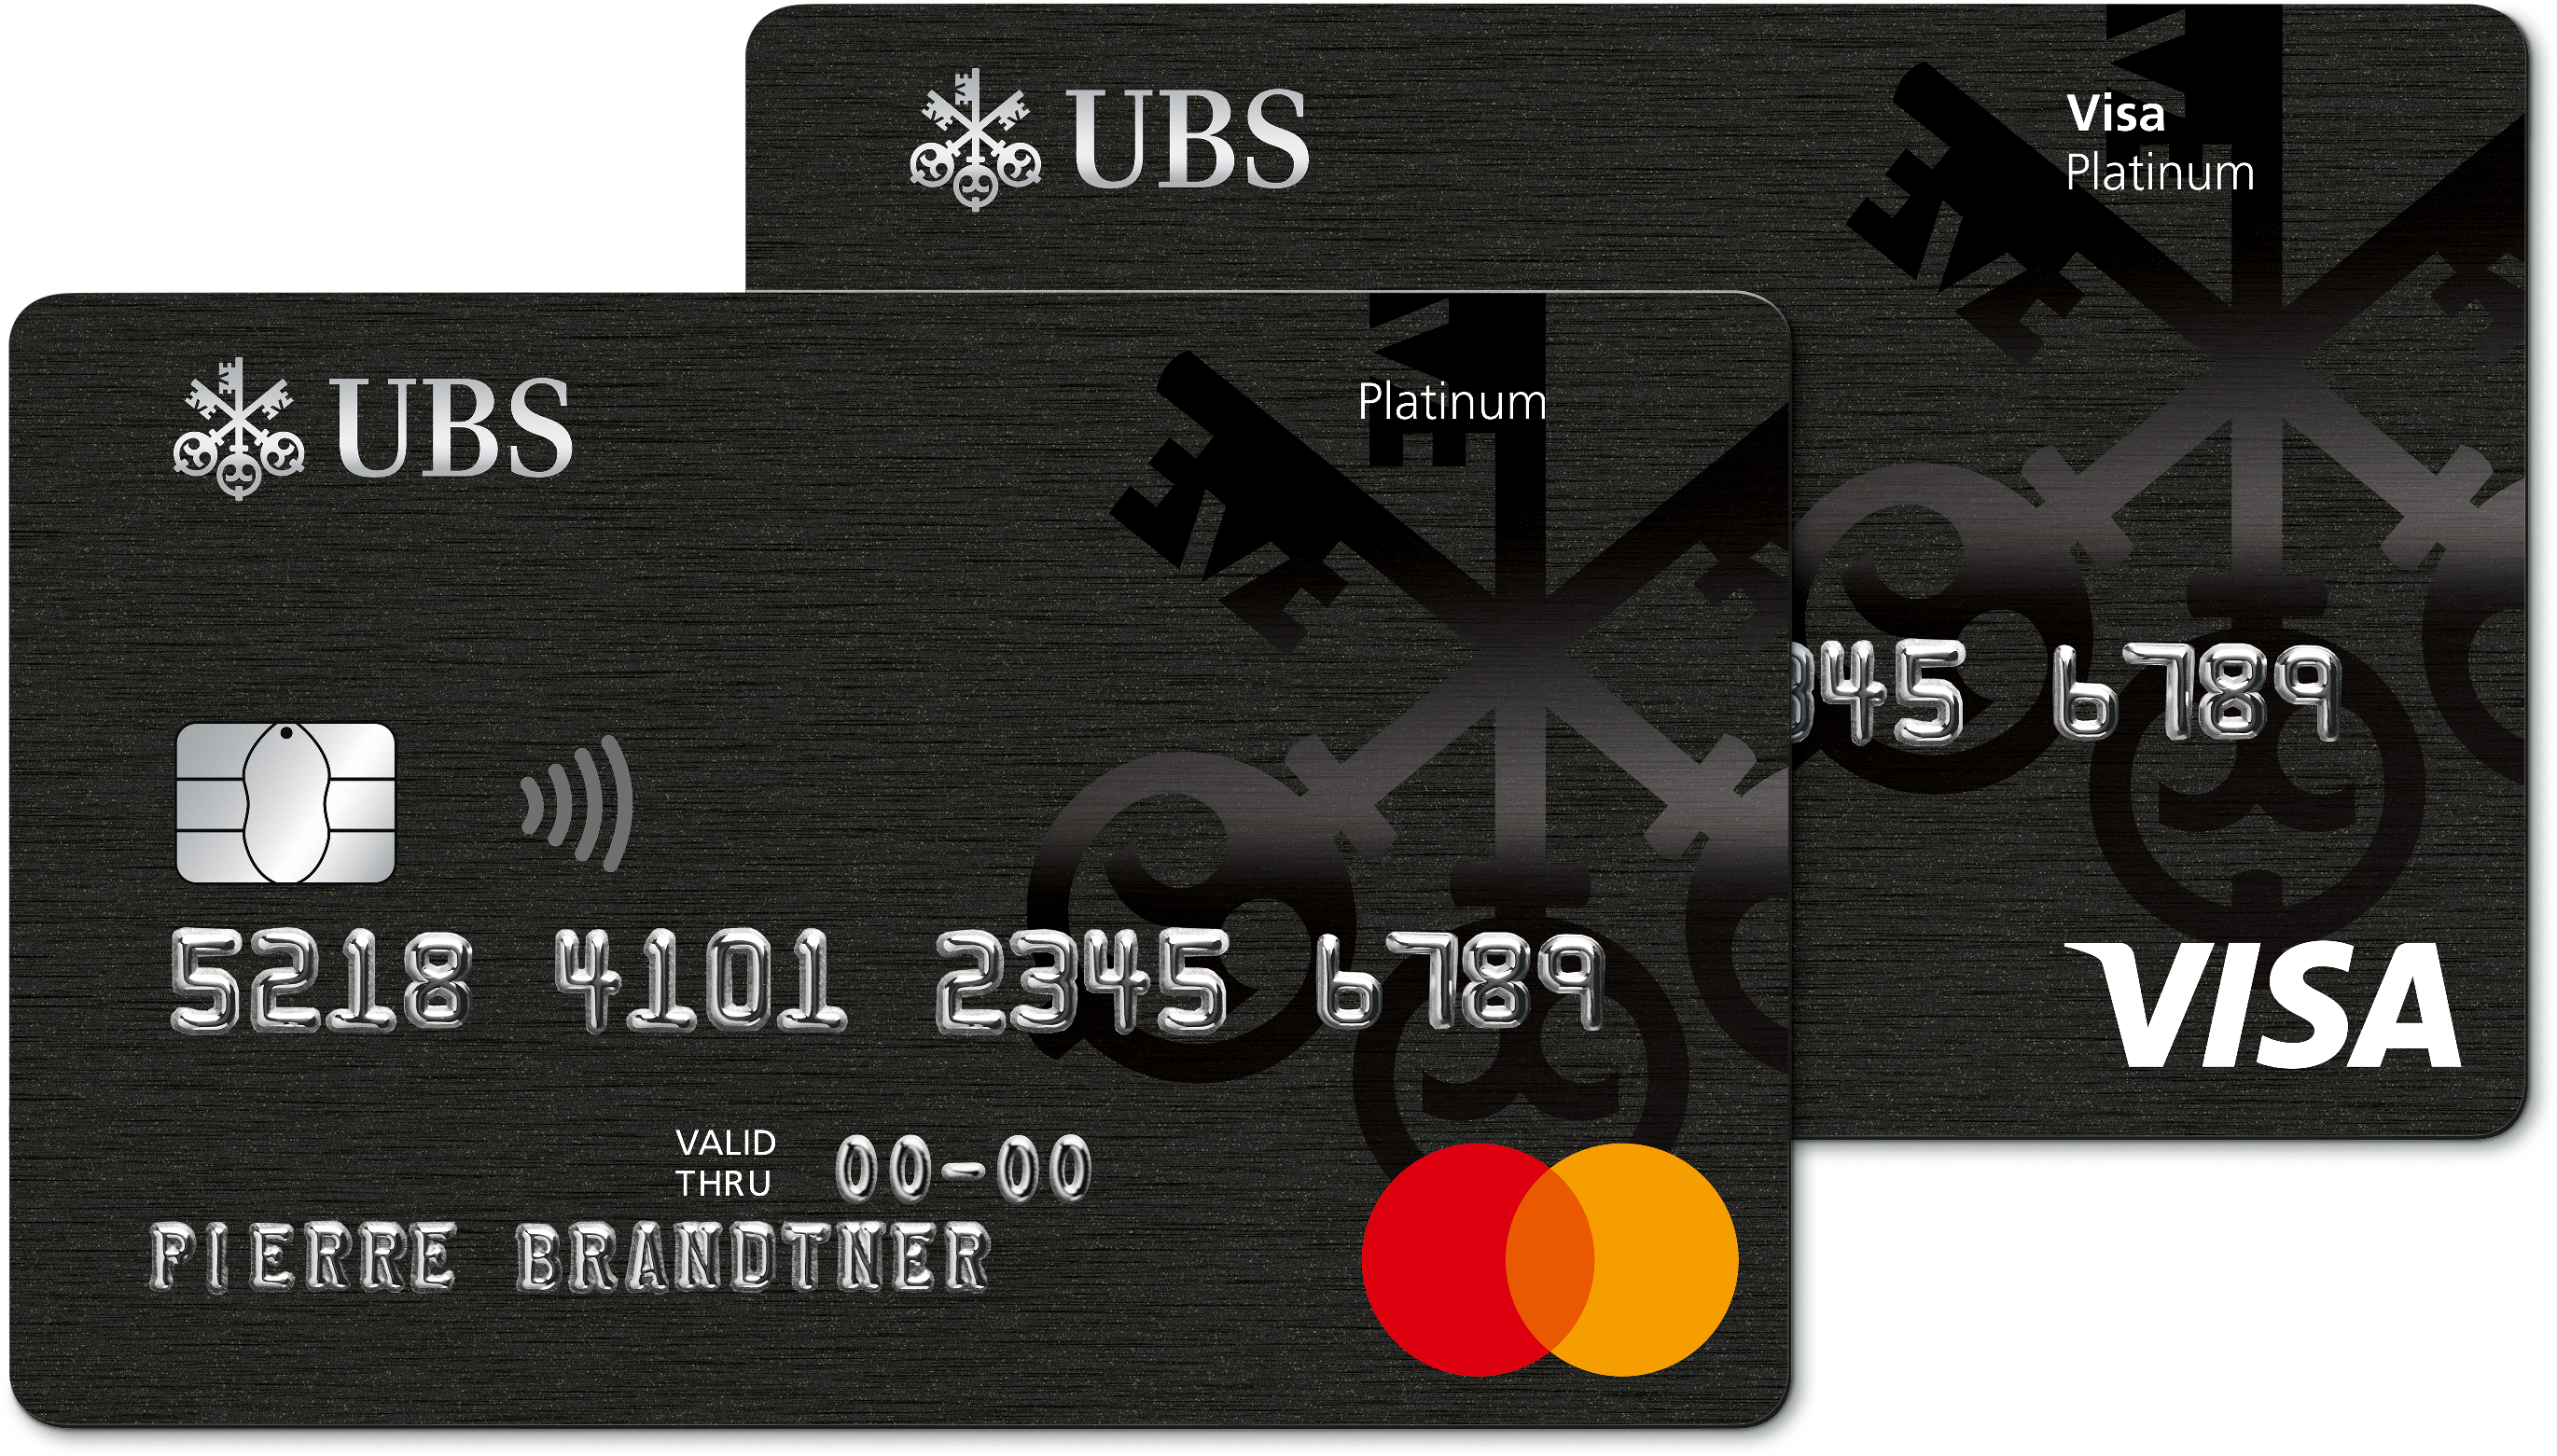 Банку ubs. UBS карта. Карта банка UBS. Платиновая карта. Visa Platinum Card.